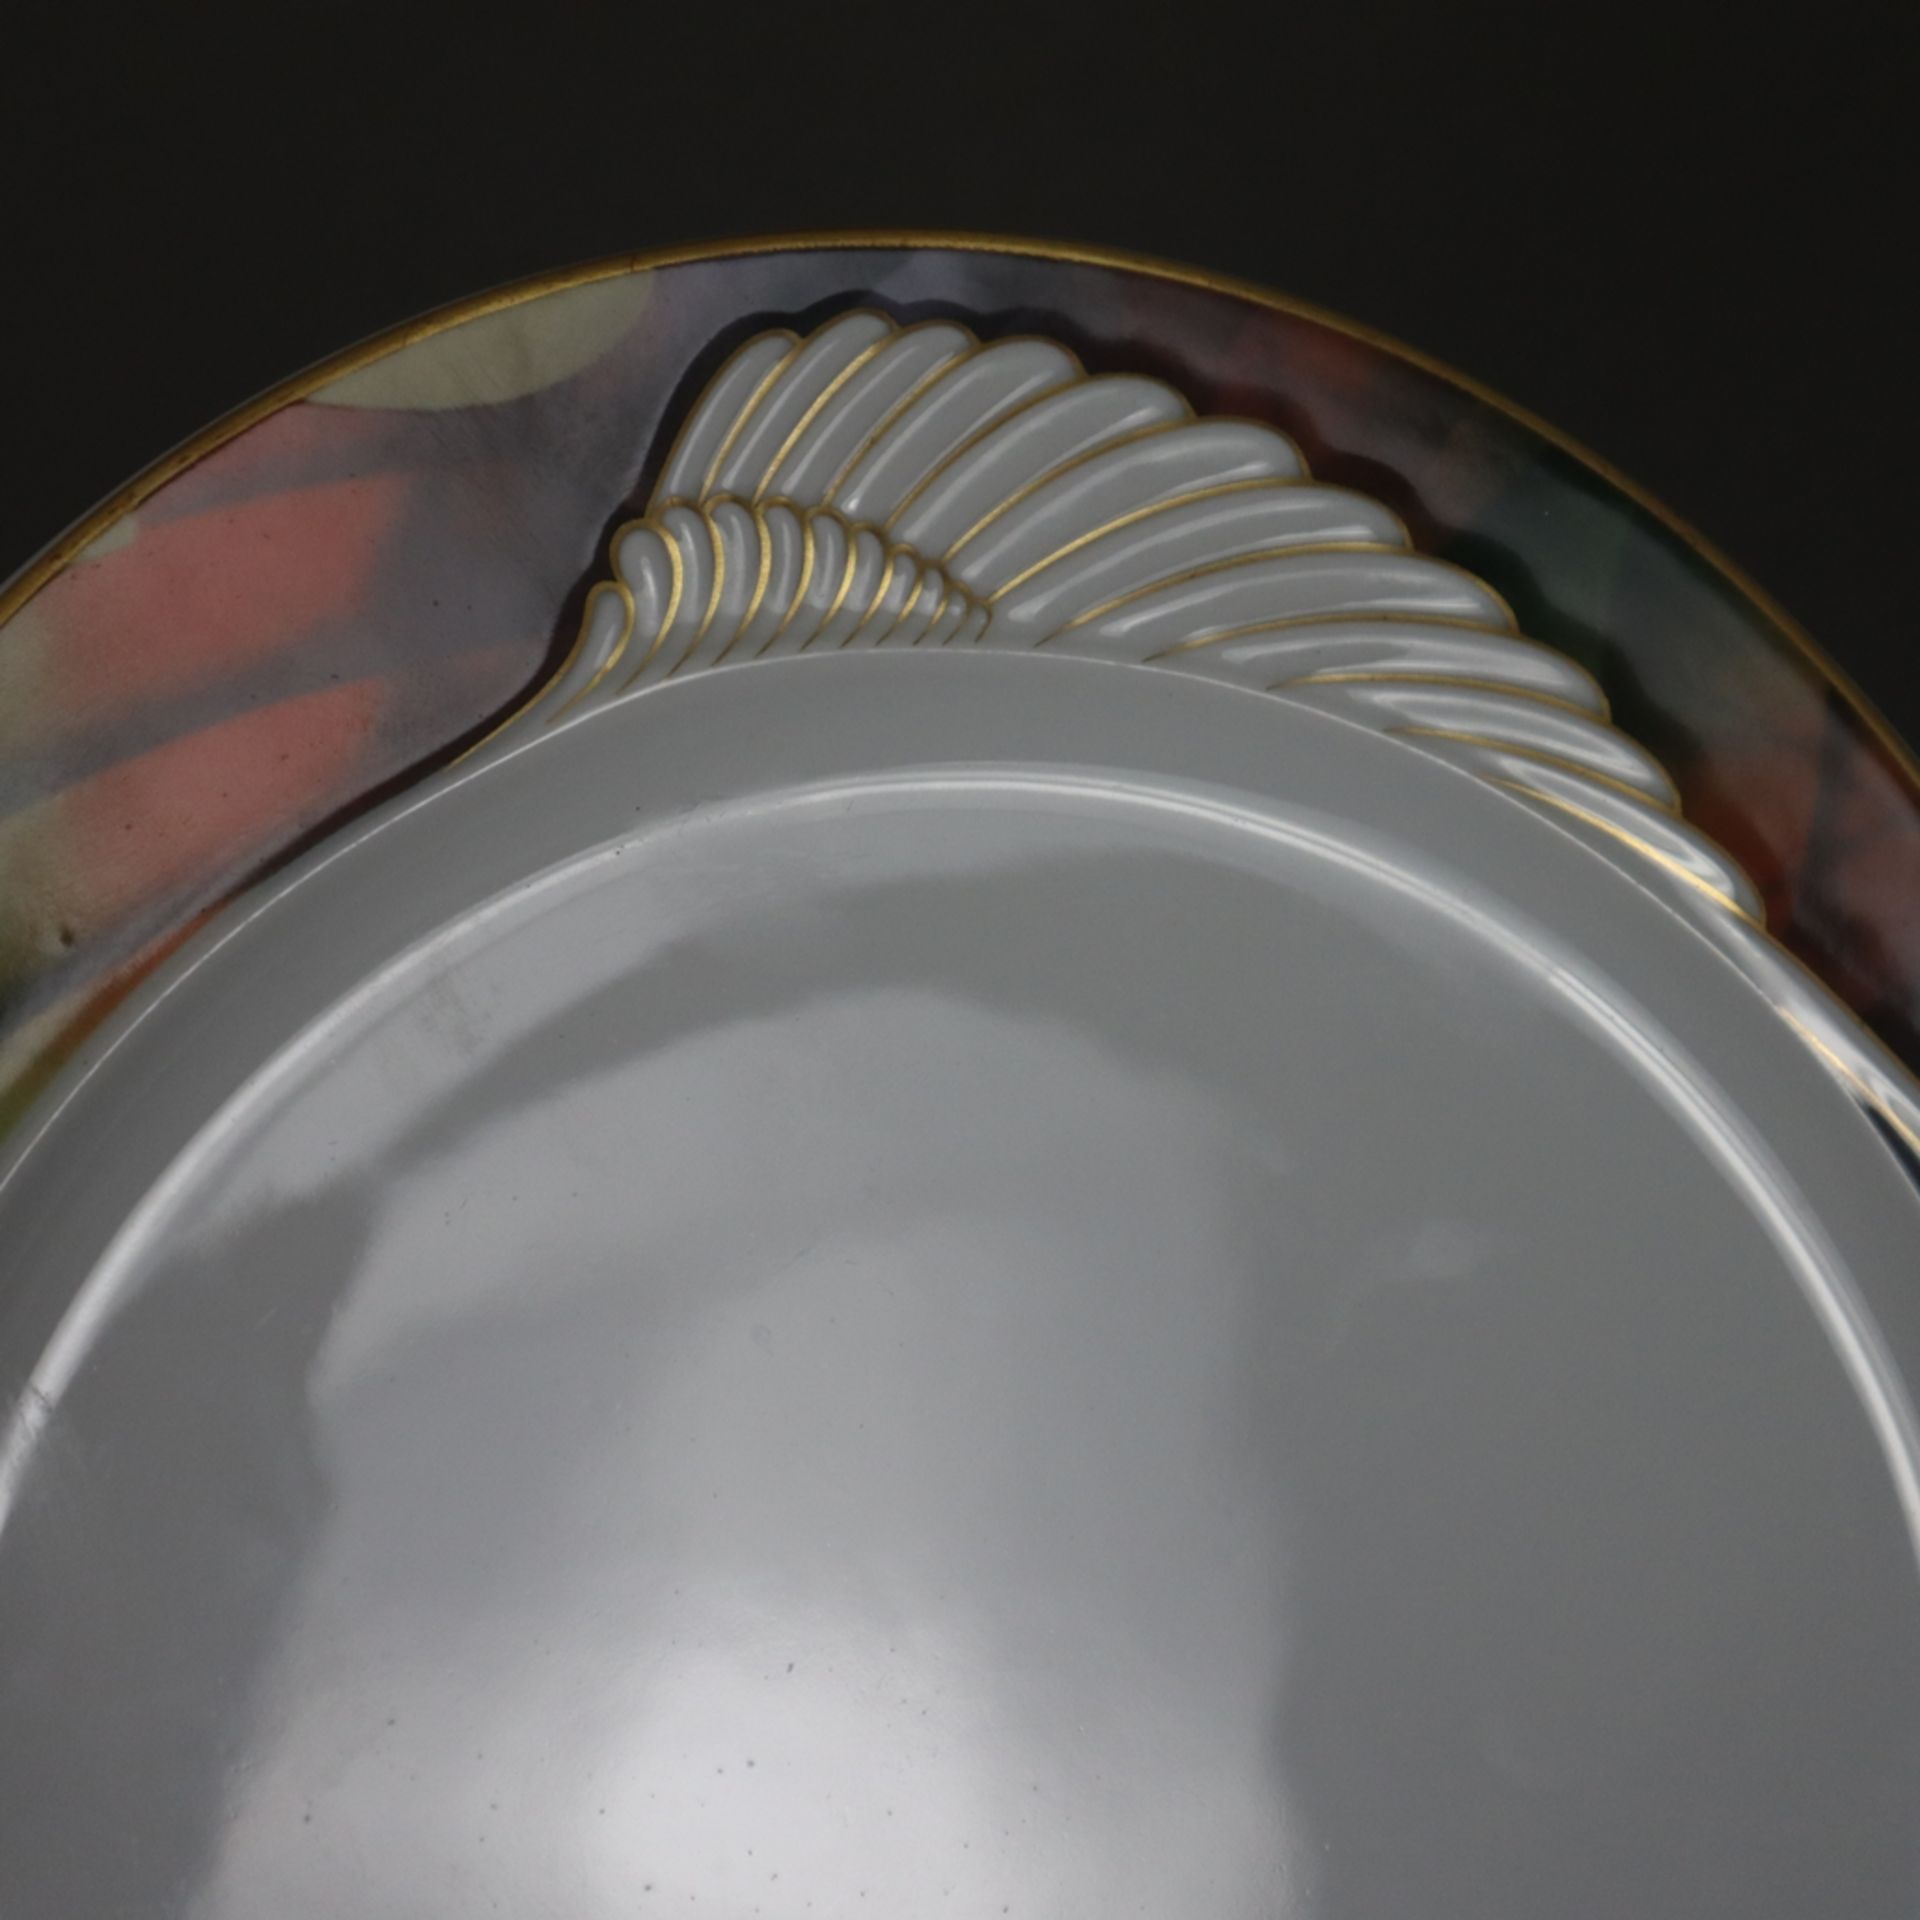 6 Teller und 1 Schüssel - Rosenthal, Porzellan, Form "Mythos" mit reliefiertem Flügelmotiv, Entwurf - Bild 3 aus 5